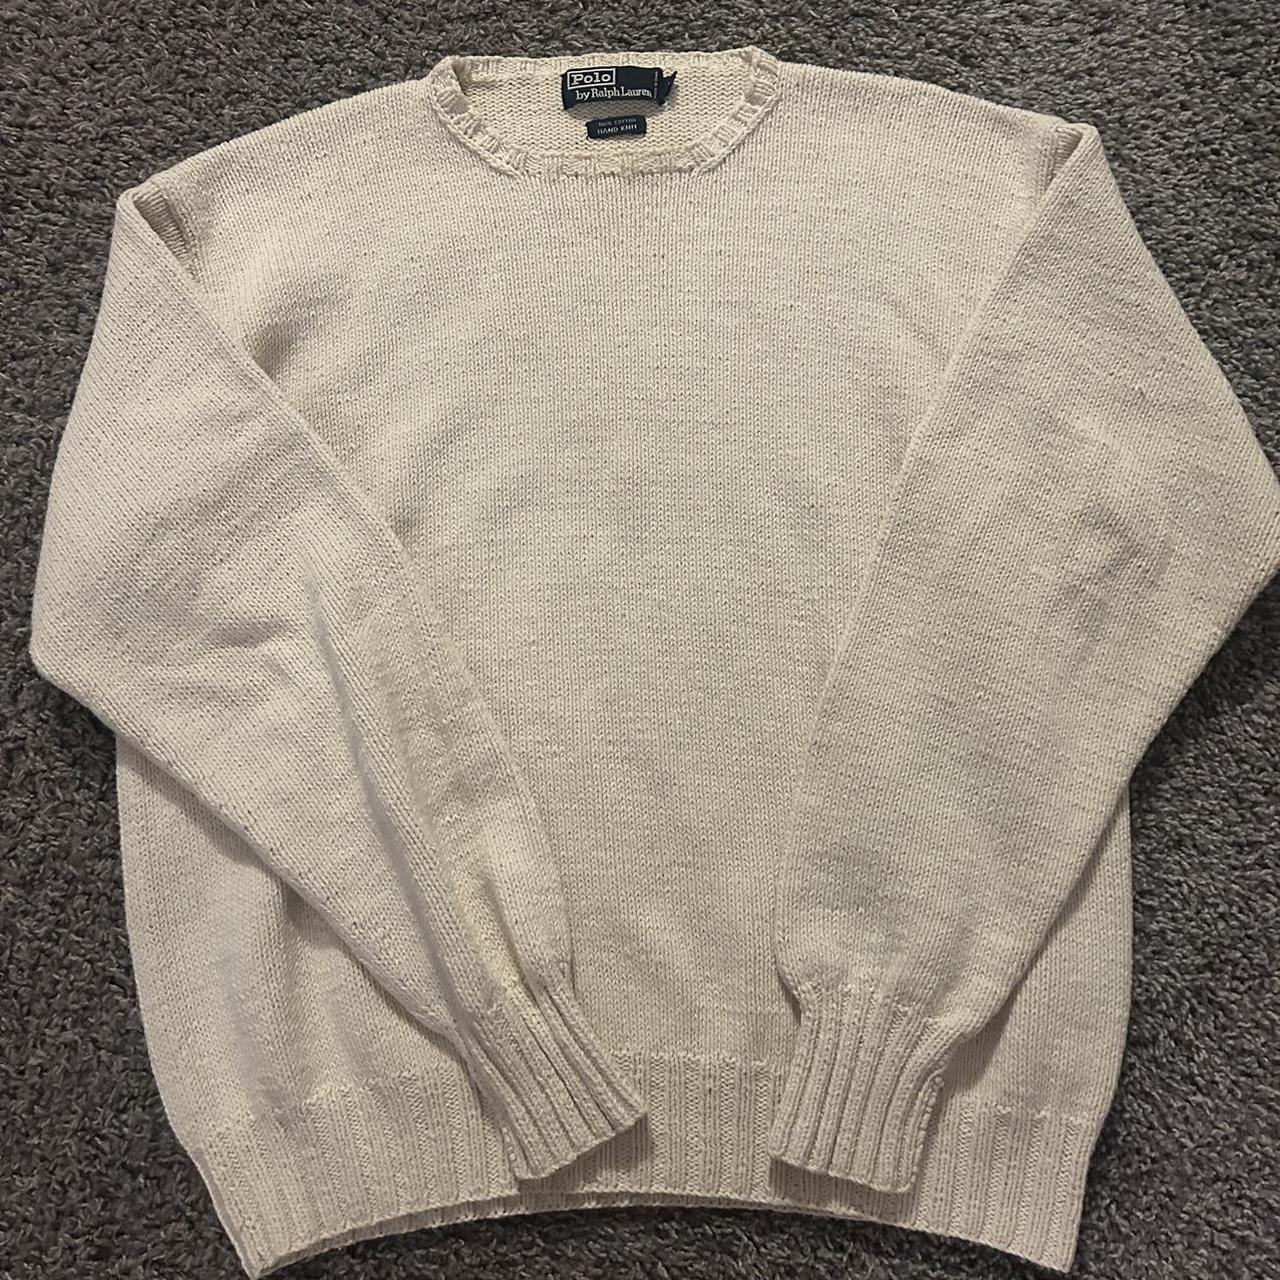 90s men’s vintage knit polo sweater #oldmoney... - Depop